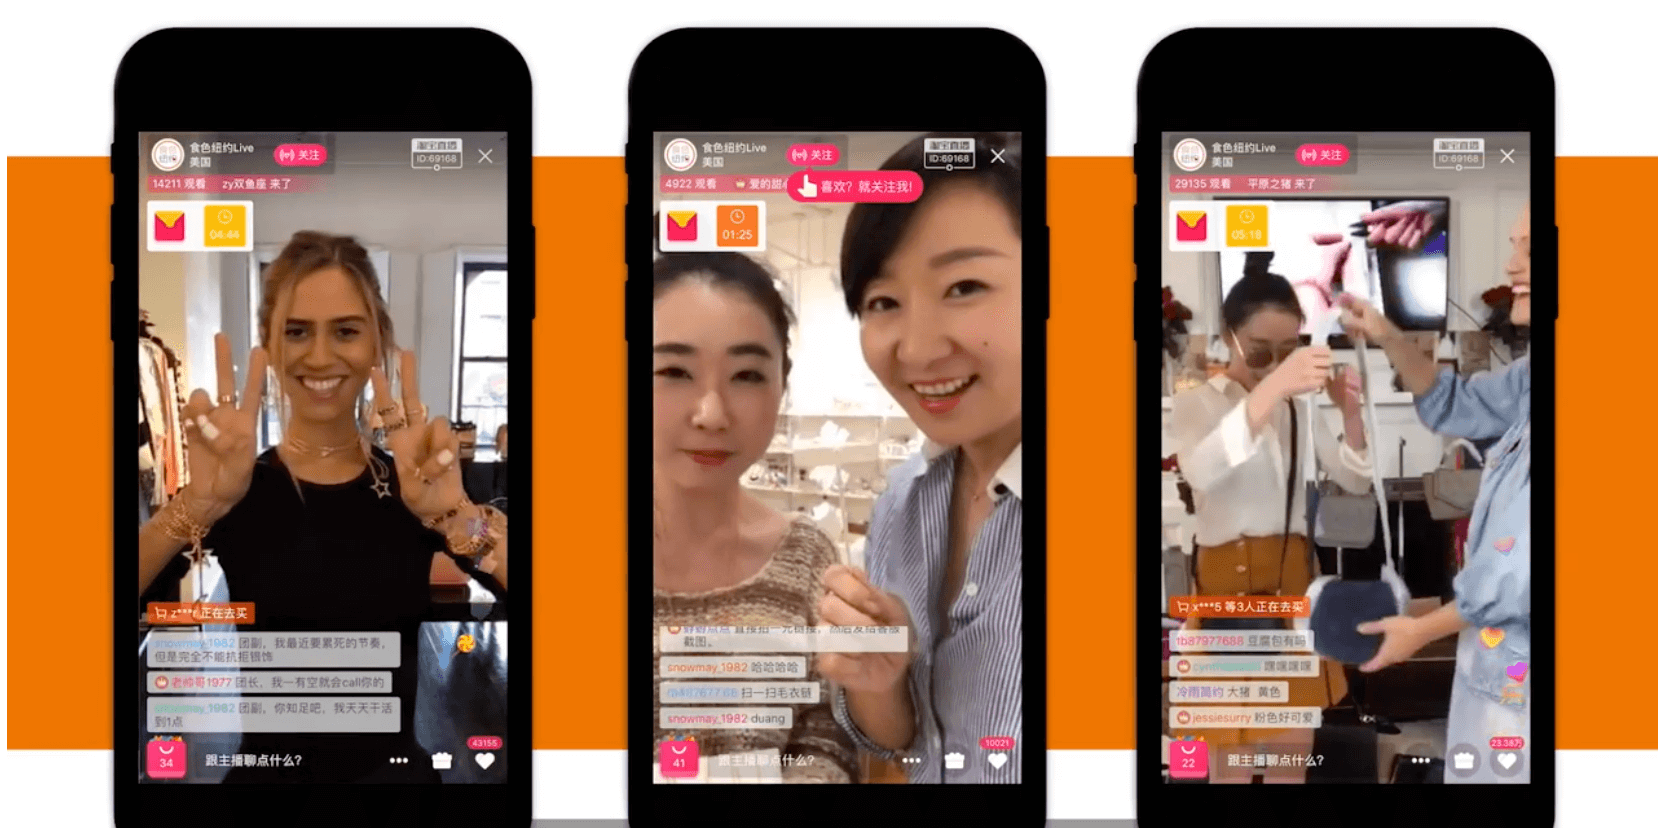 Drei Smarphones die Live shopping in China zeigen